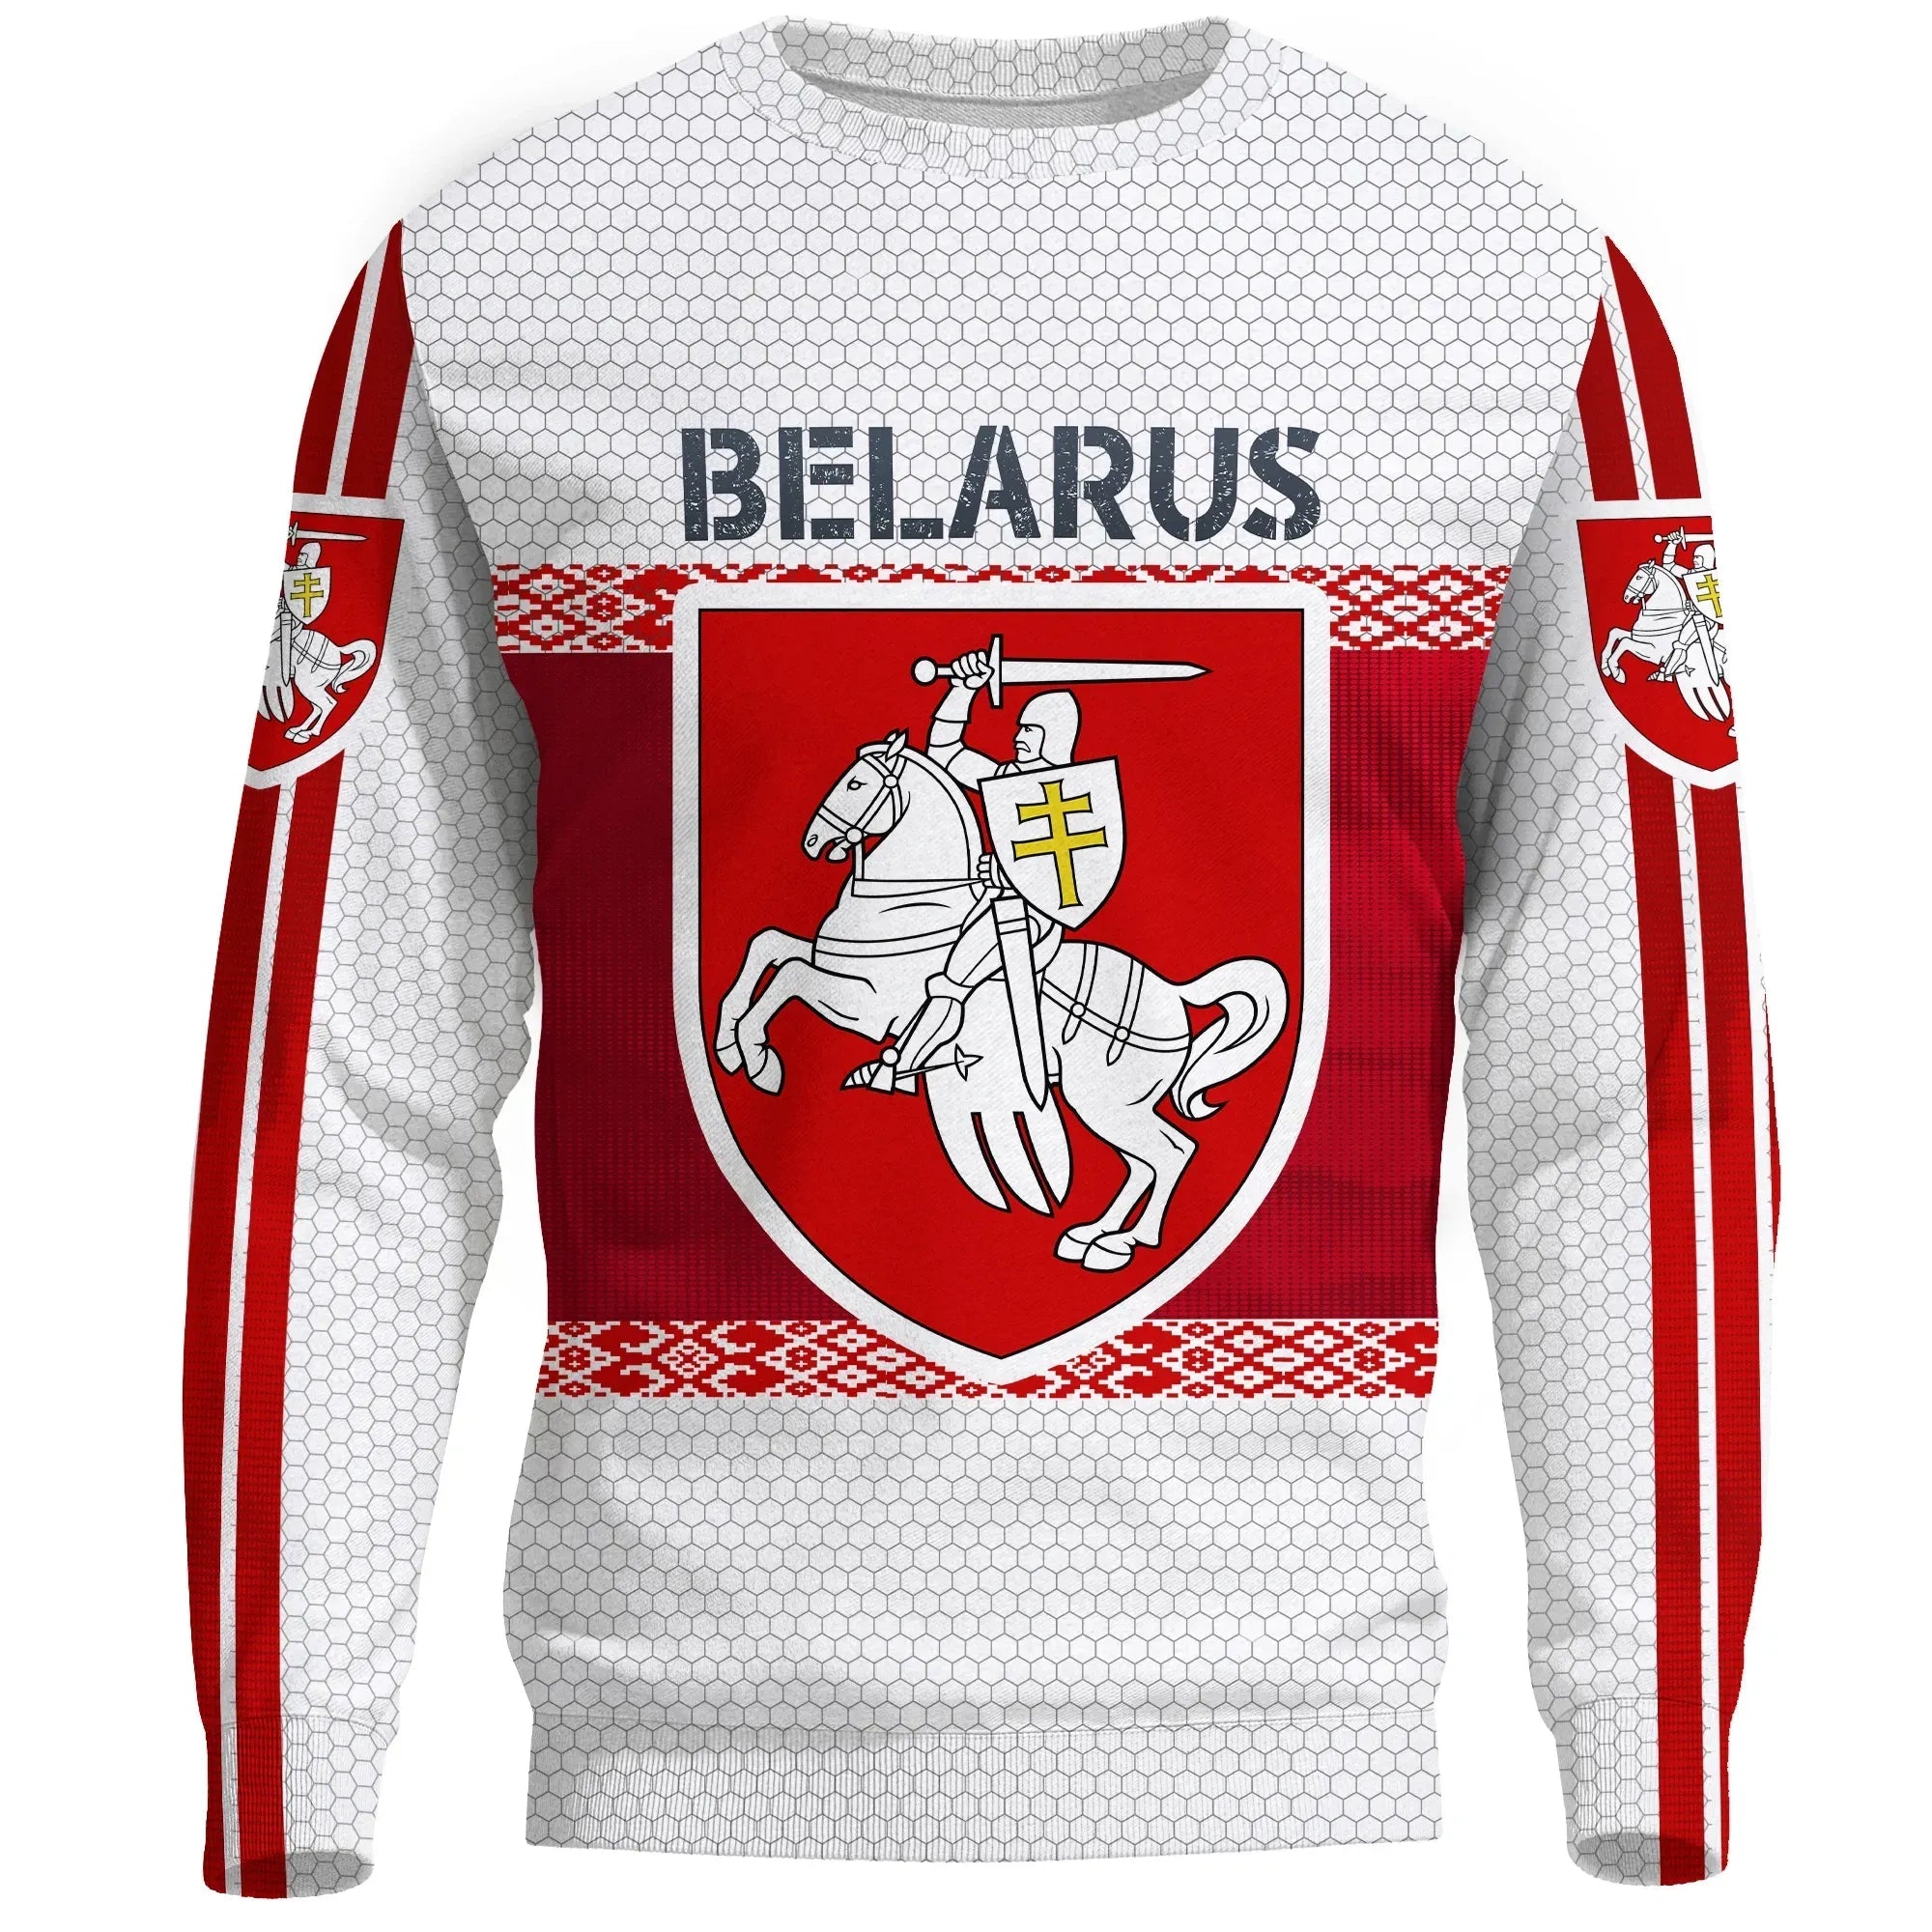 belarus-coat-of-arms-sweatshirt-special